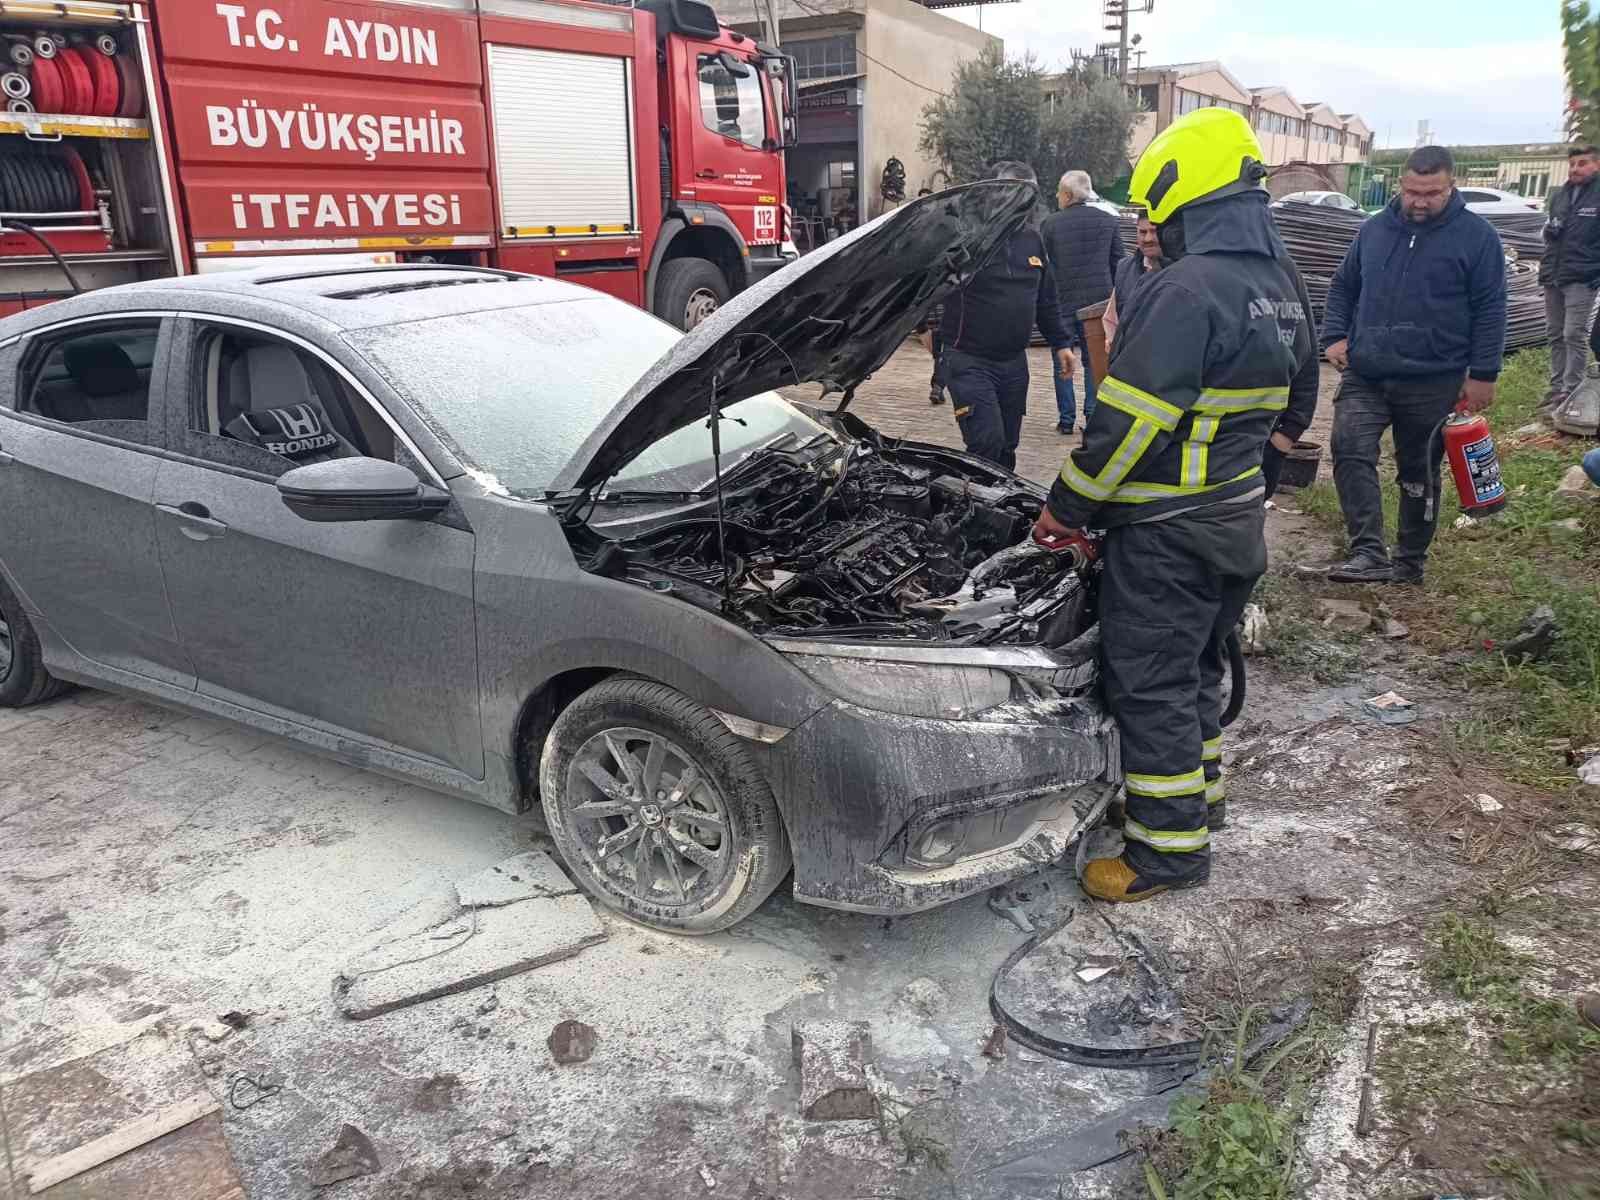 Otomobildeki yangın hasara neden oldu #aydin